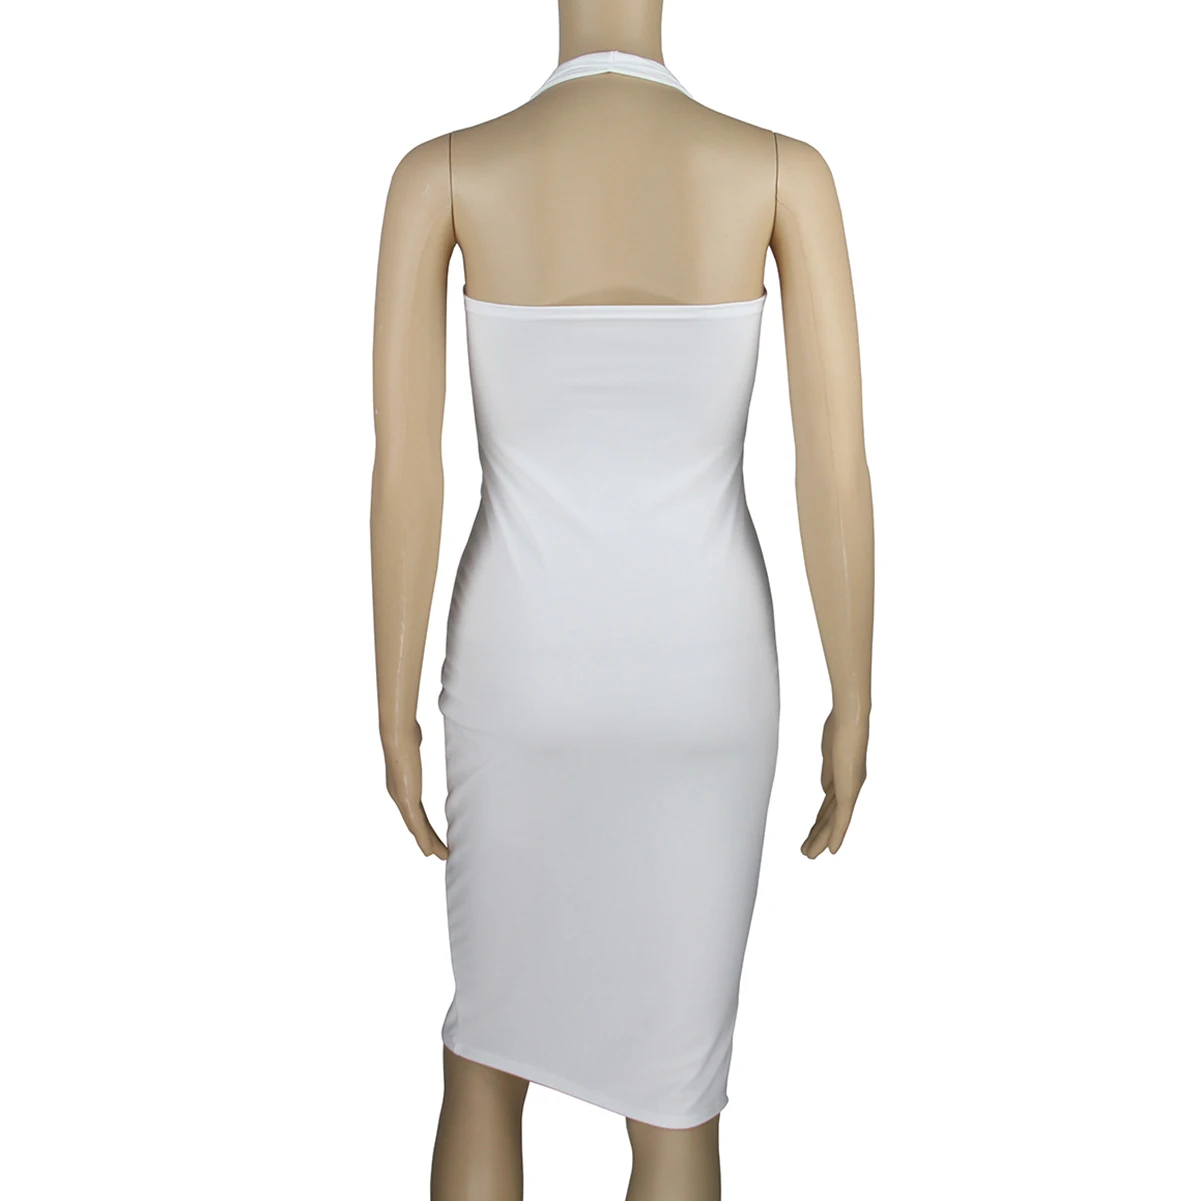 Обувь для ночного клуба сексуальное Белое платье с v-образным вырезом и лямкой на шее разрез платье с лямкой на шее, с бесплатной доставкой